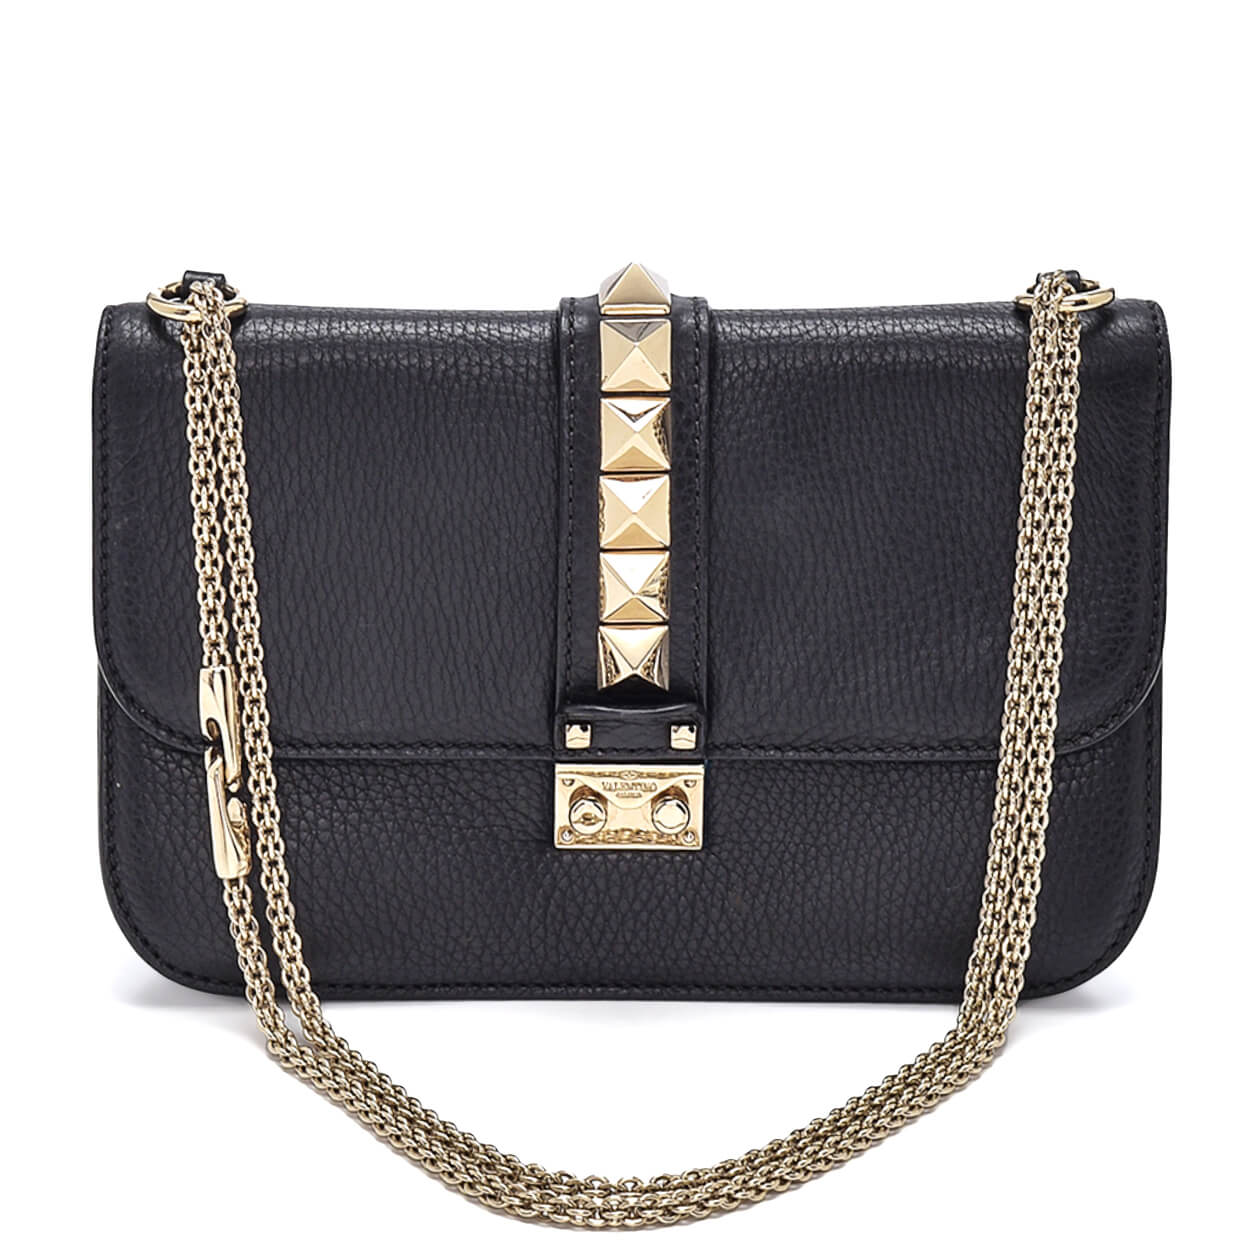 Valentino - Black Grained Leather Rockstud Glam Lock Flap Shoulder Bag